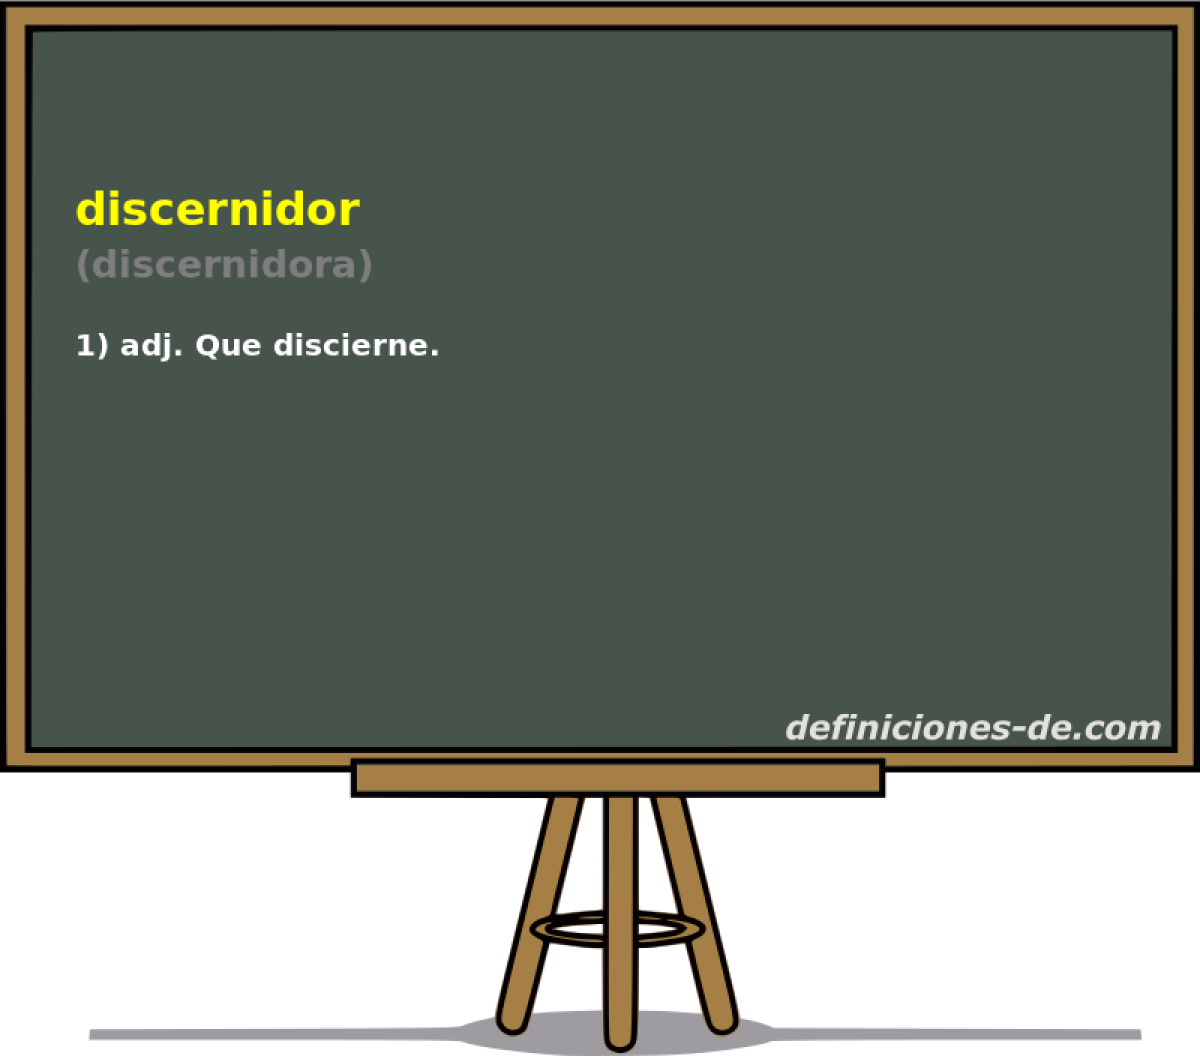 discernidor (discernidora)